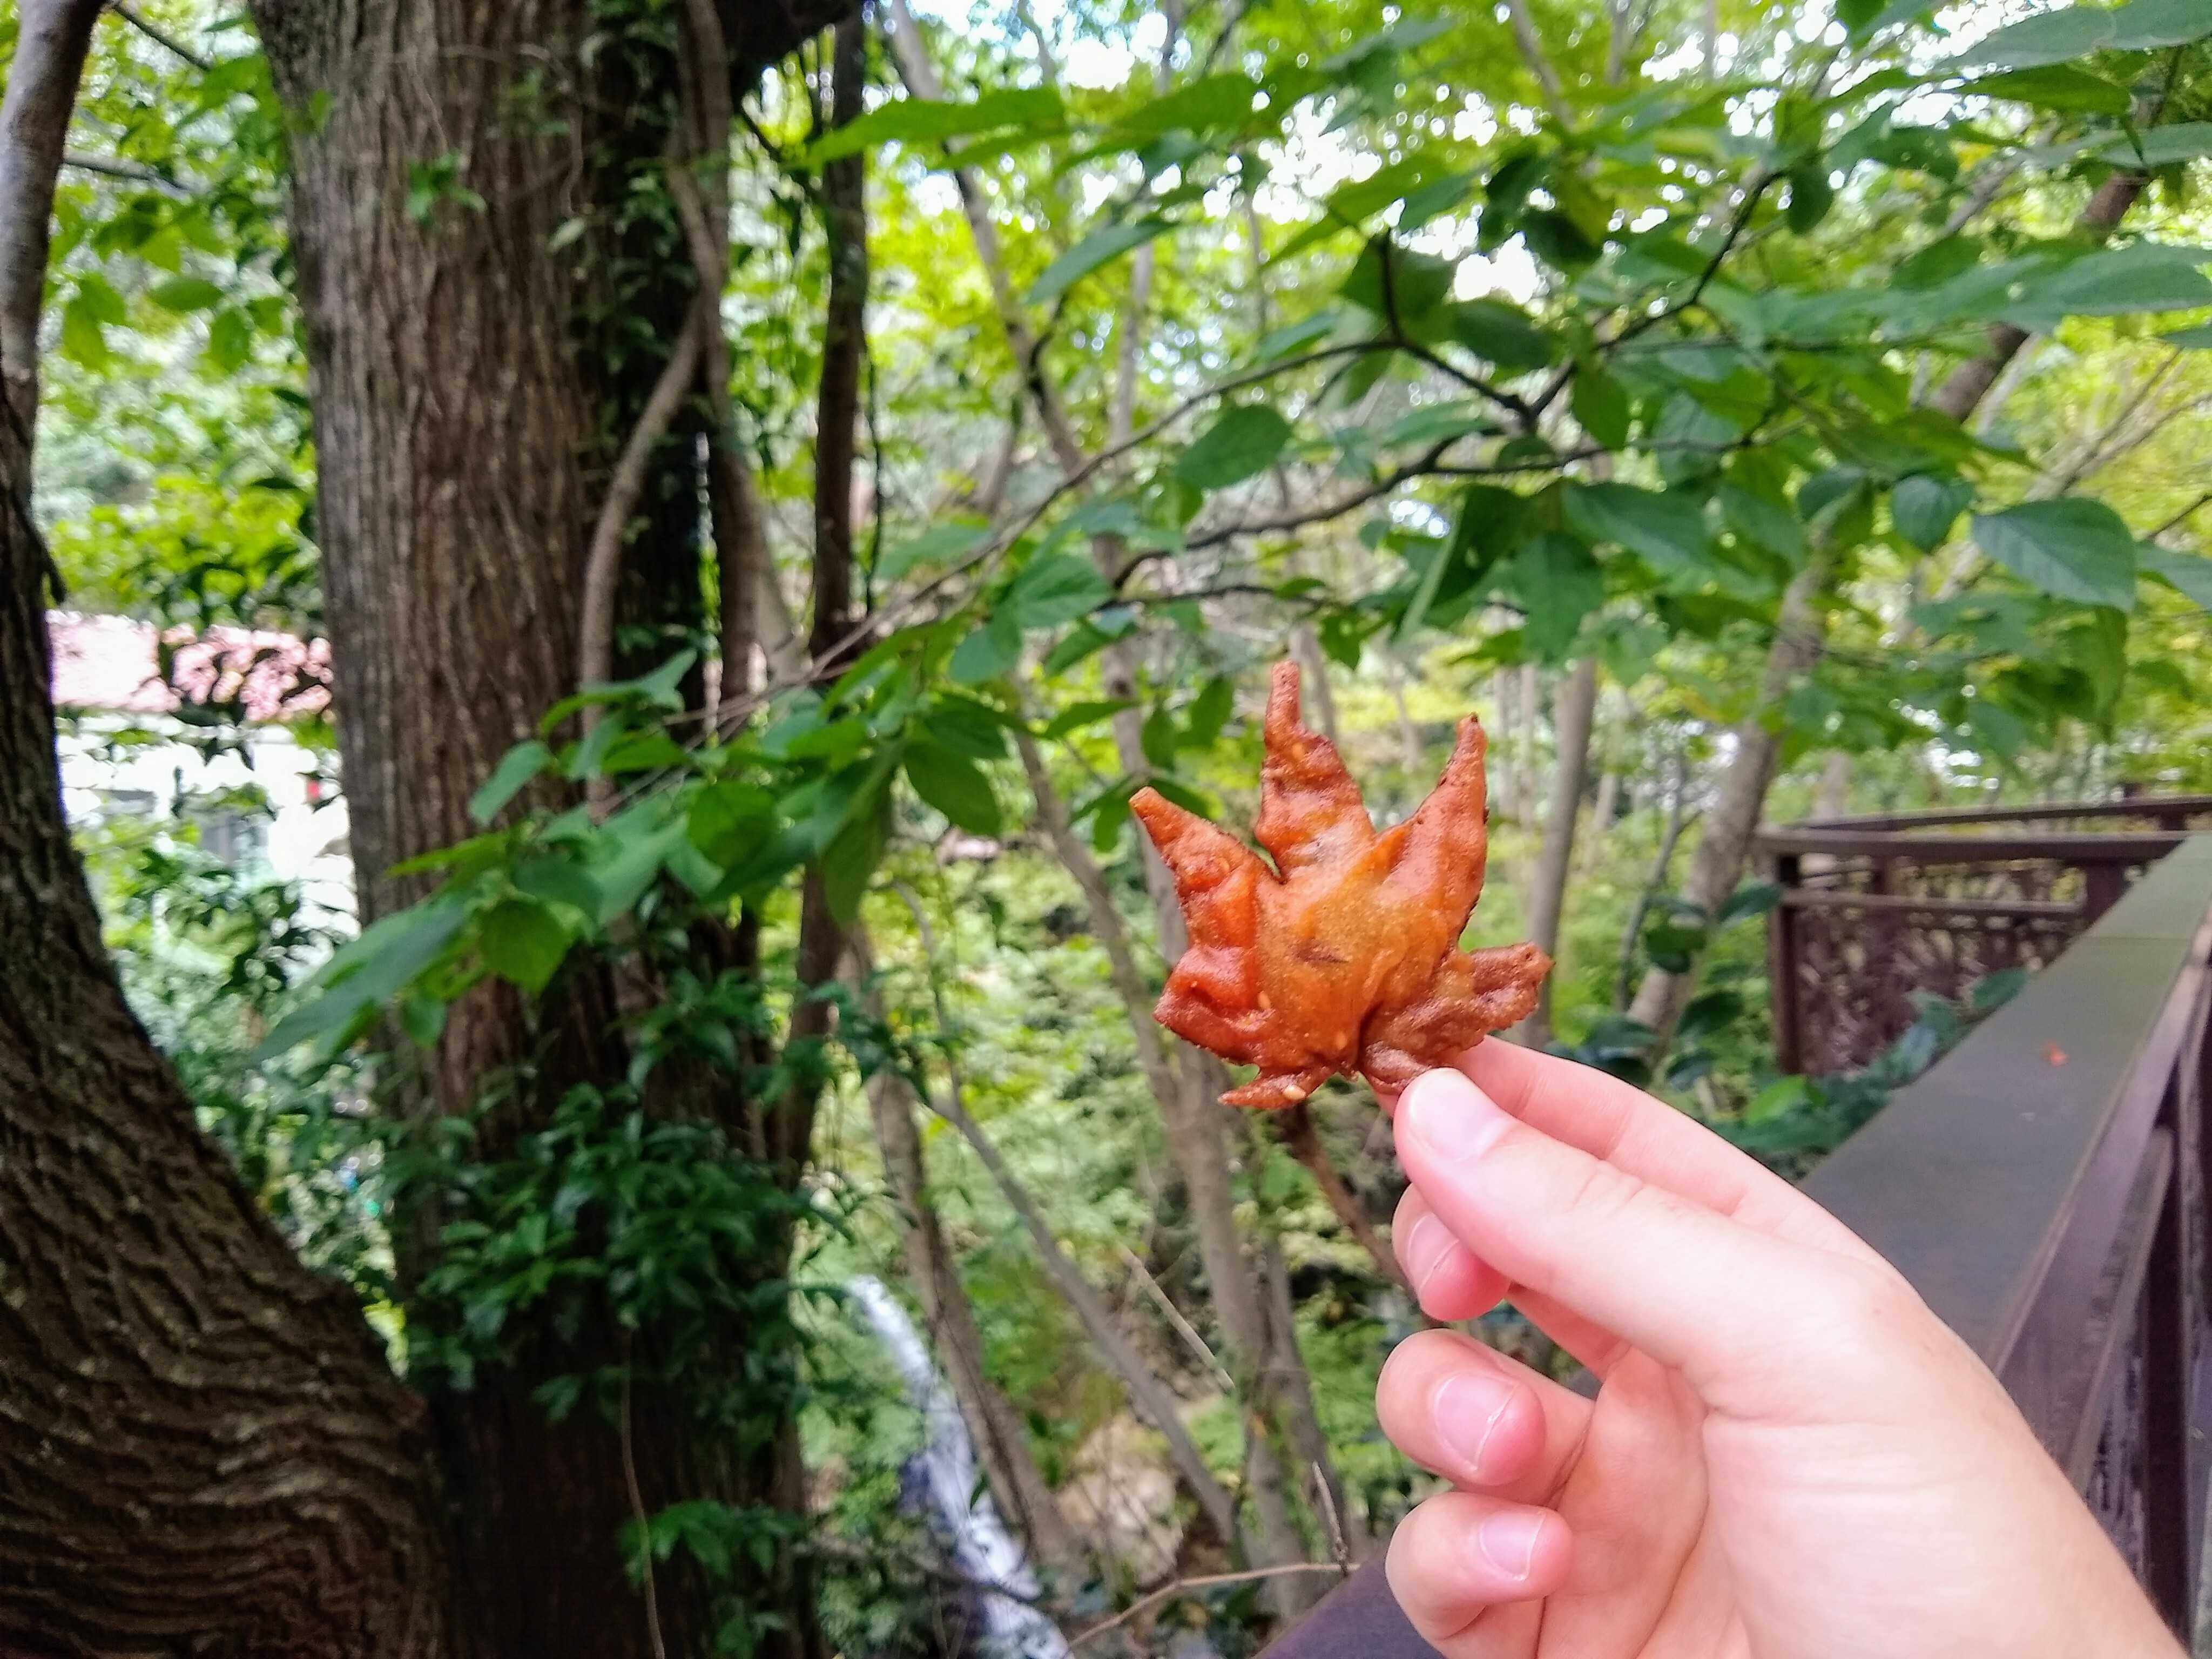 Deep-fried maple leaves, momiji, at Minoh Waterfall, Osaka